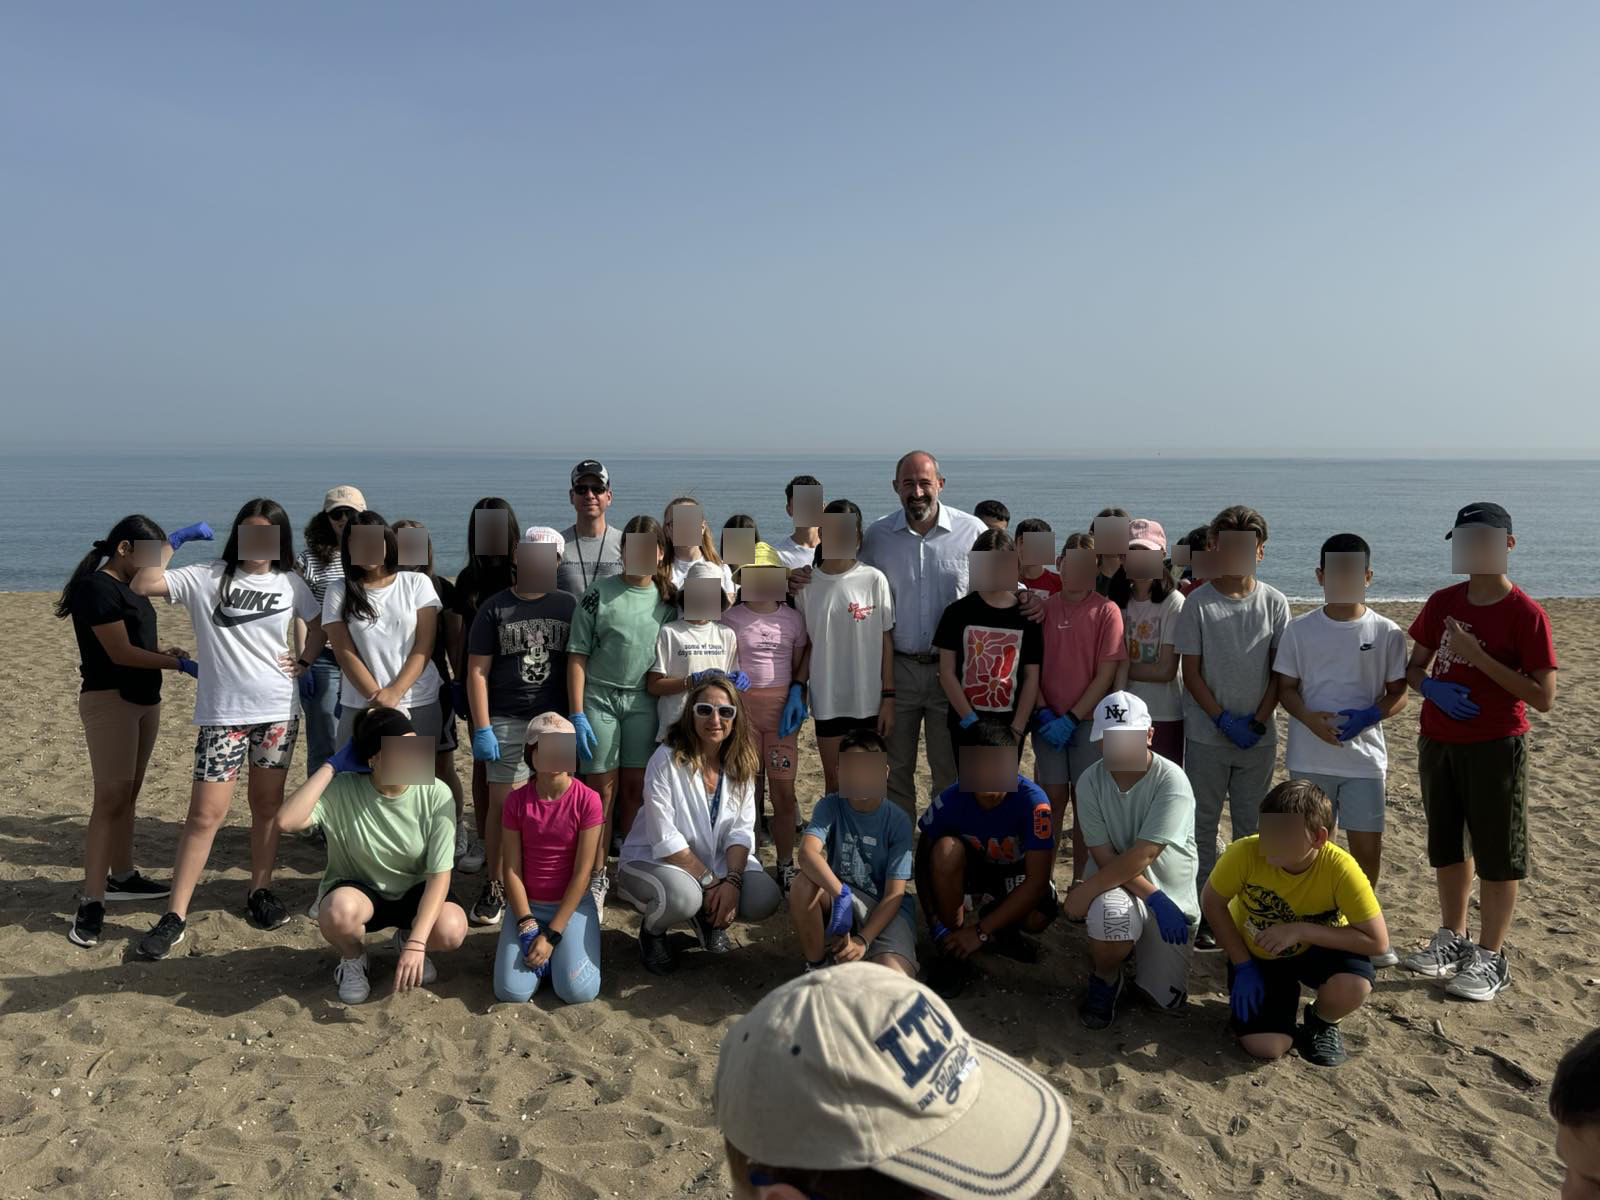 Δράση καθαρισμού της παραλίας στο Λίντο από τα παιδιά του 40ου και 43ου Δημοτικού Σχολείου ΗρακλείουΤην παραλία του Λίντο καθάρισαν το πρωί της Τρίτης 21/5 μαθητές και
μαθήτριες του 40ου και 43ου Δημοτικού Σχολείου Ηρακλείου, παρουσία του
Αντιδημάρχου Καθαριότητας, Περιβάλλοντος και Ενέργειας Νίκου Γιαλιτάκη,
στελεχών του Τμήματος Μελετών, Προγραμματισμού και Ανακύκλωσης του Δήμου
Ηρακλείου καθώς και επιστημονικού προσωπικού του ΕΛ.ΚΕ.Θ.Ε..
